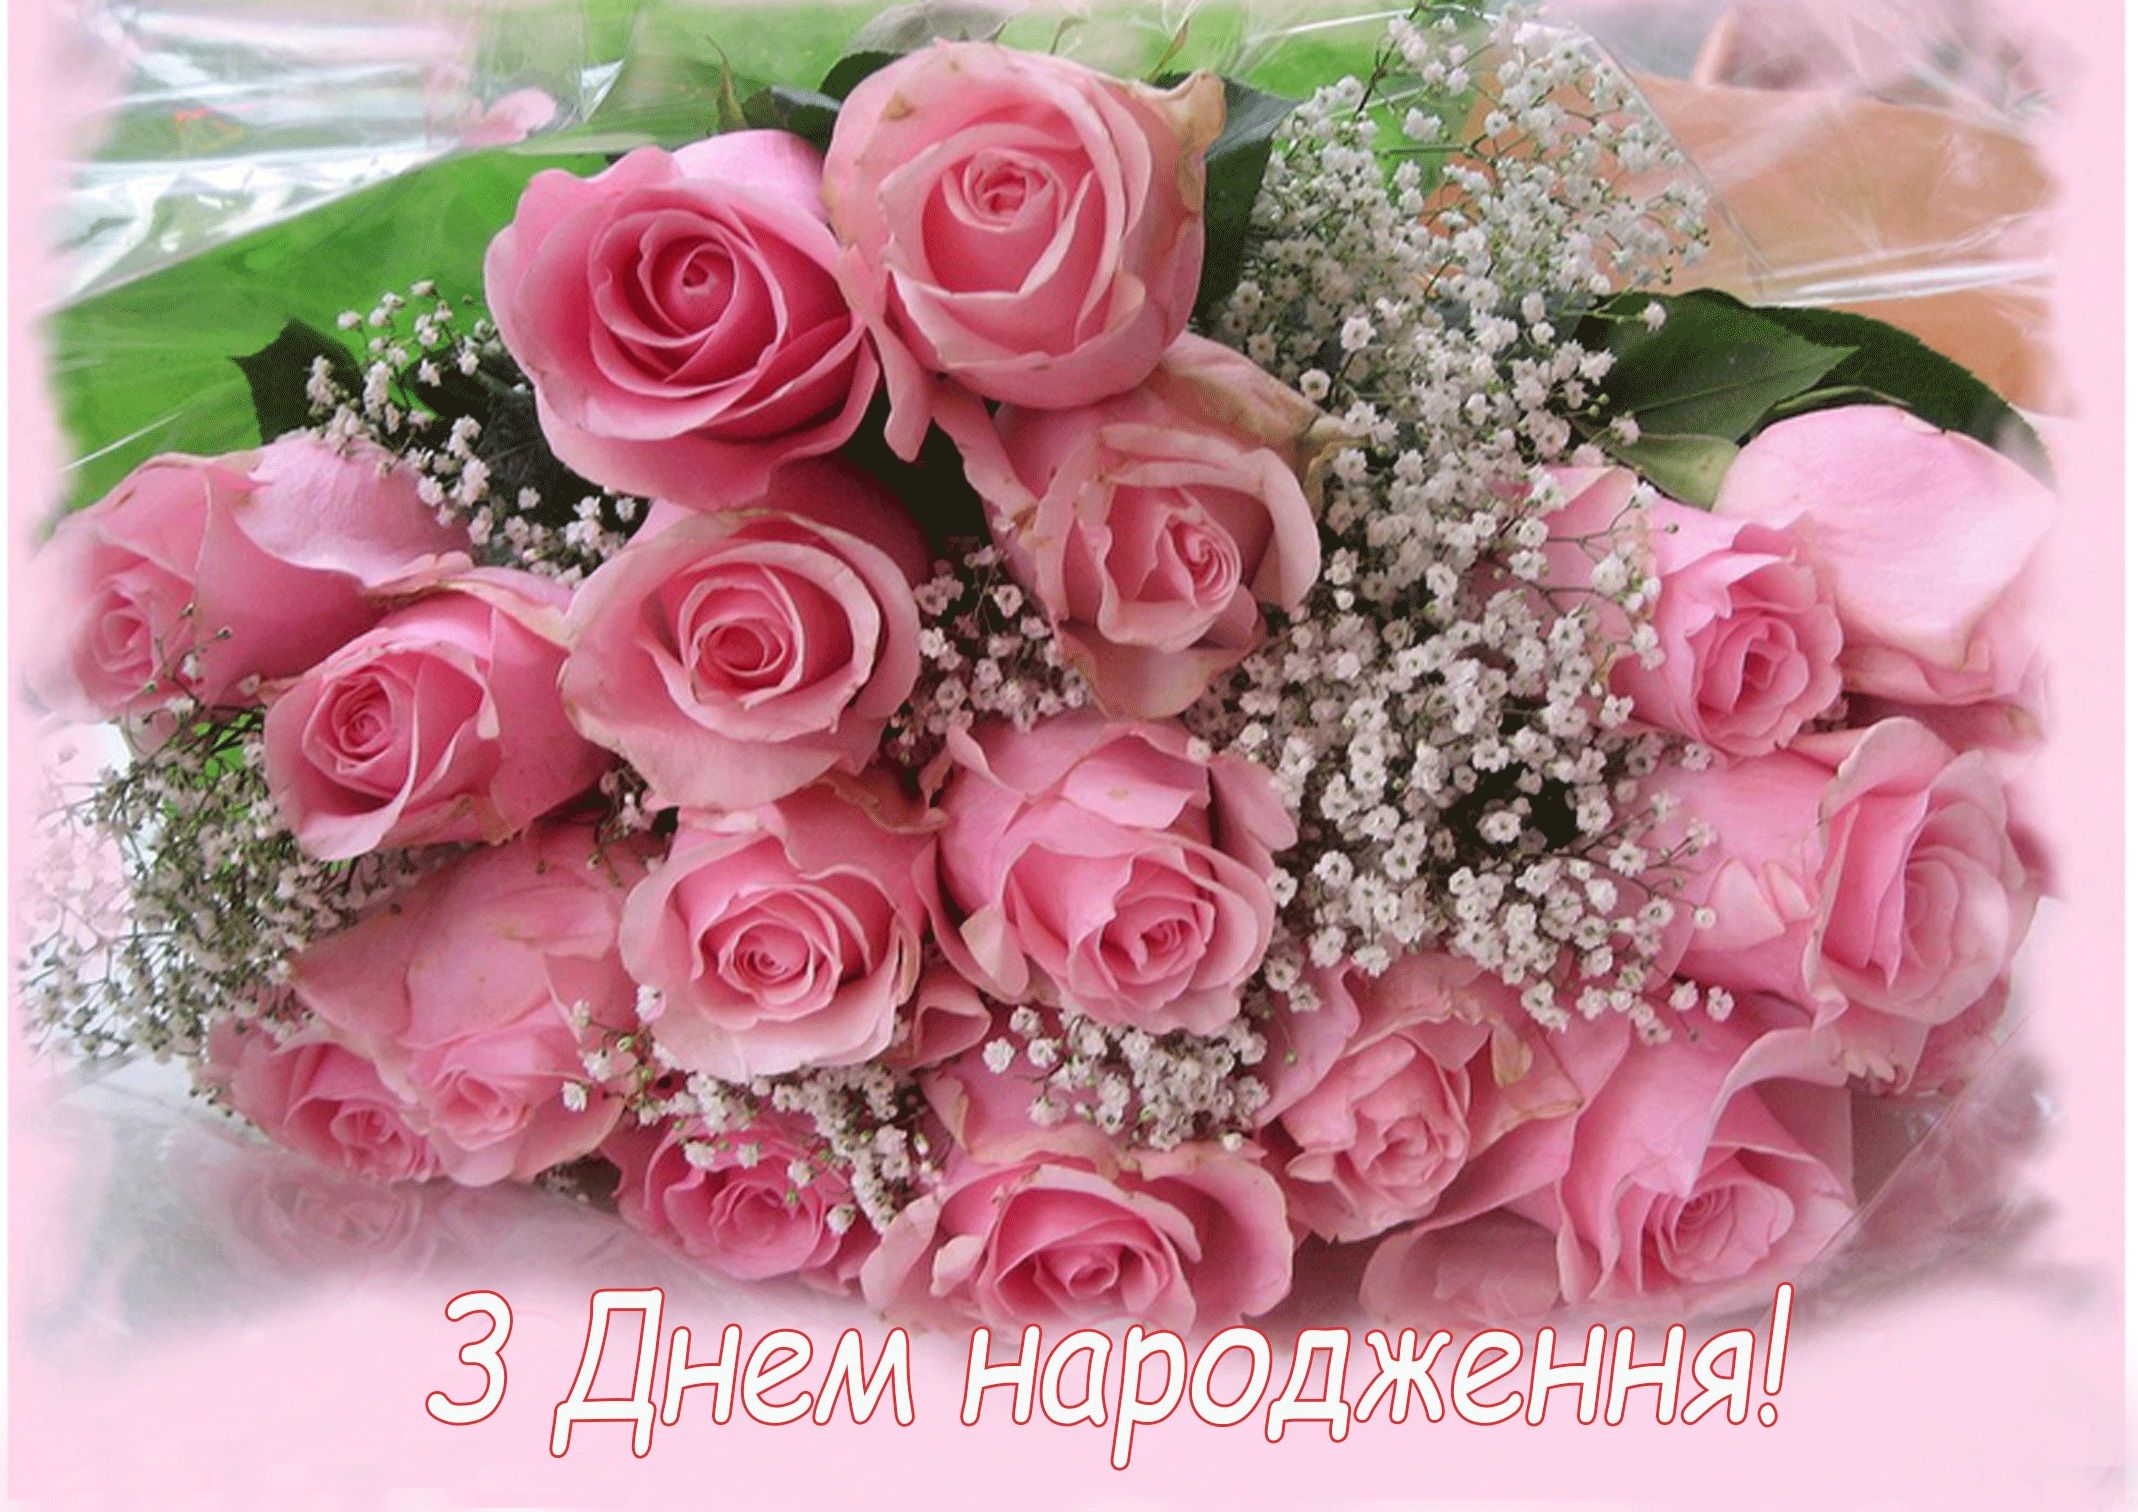 ⋗ Вафельная картинка Розы 2 купить в Украине ➛ CakeShop.com.ua, фото